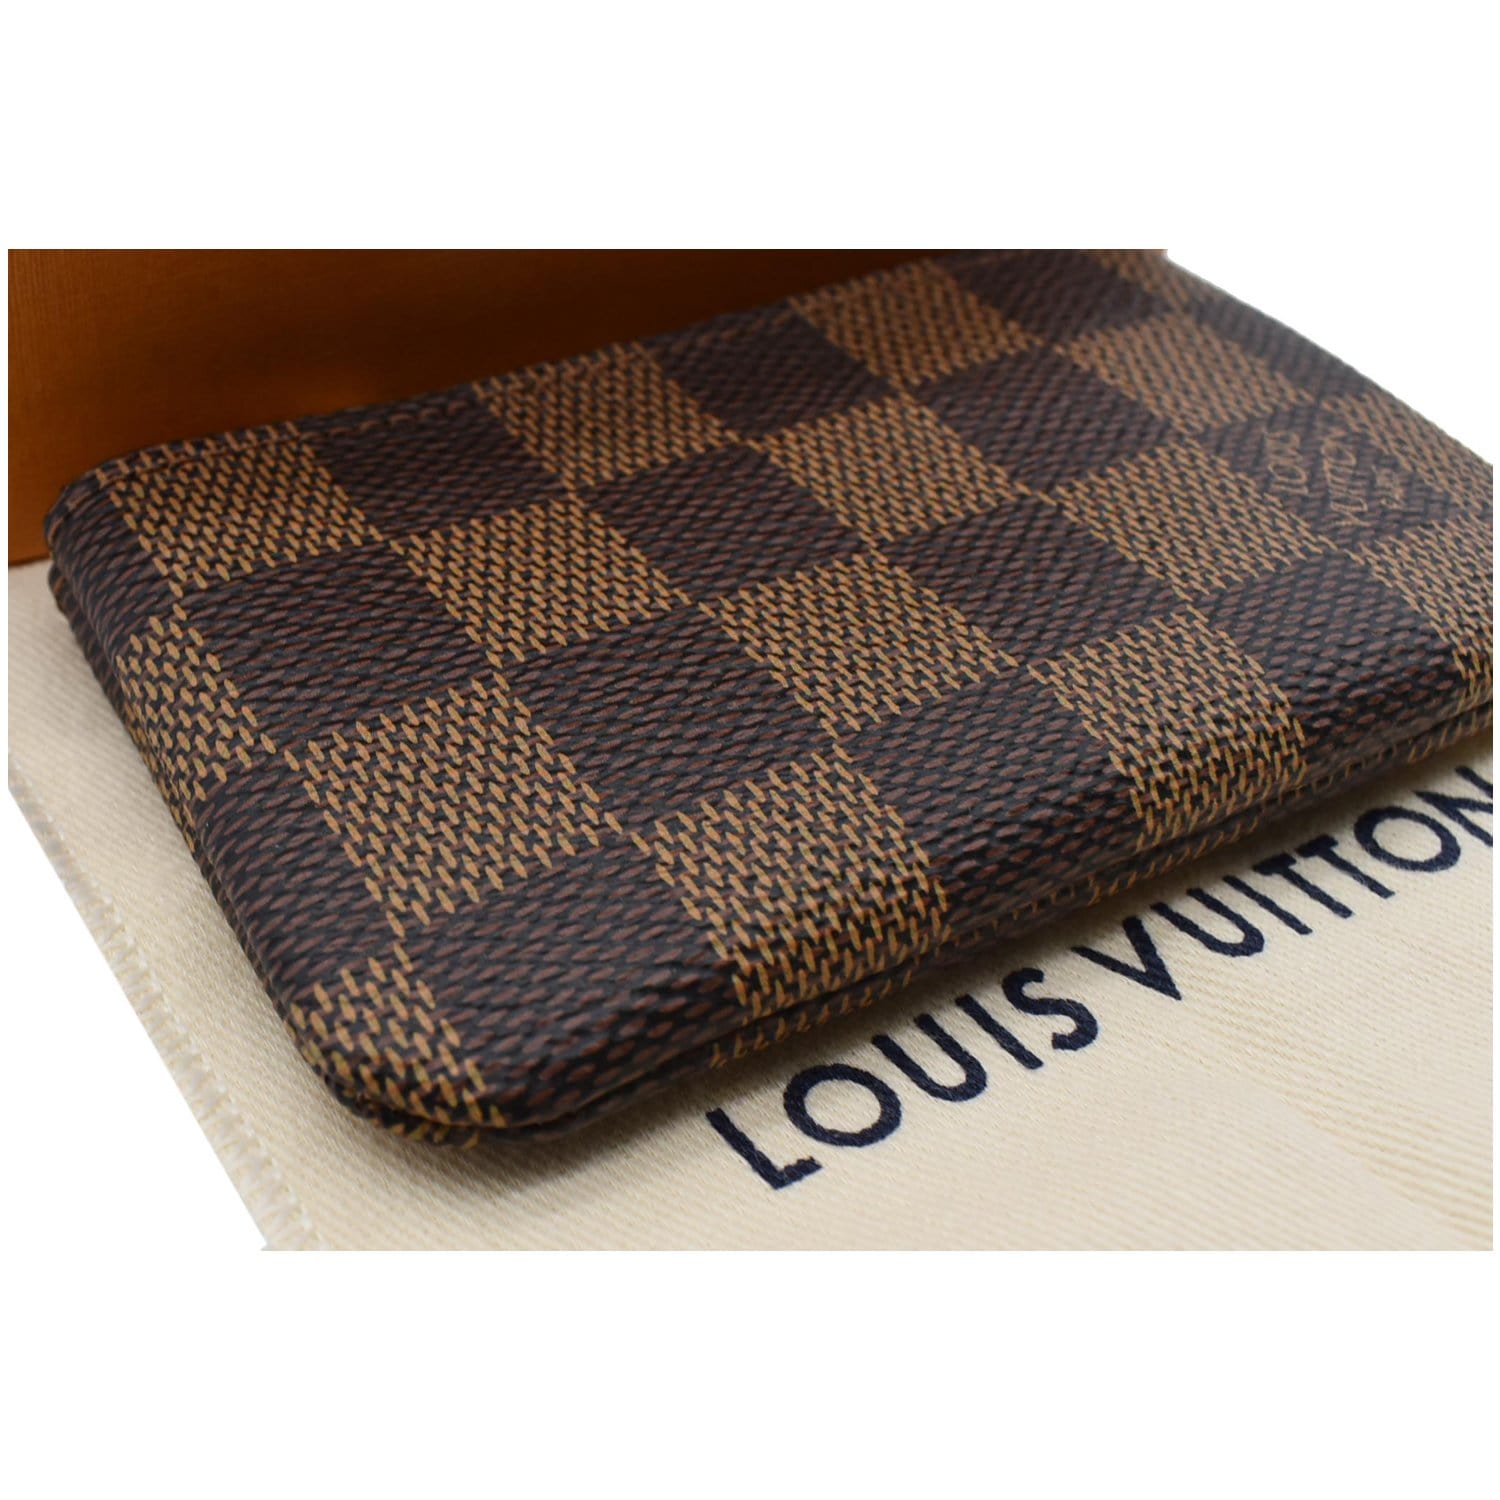 Louis Vuitton Pochette Cles, Damier Eben